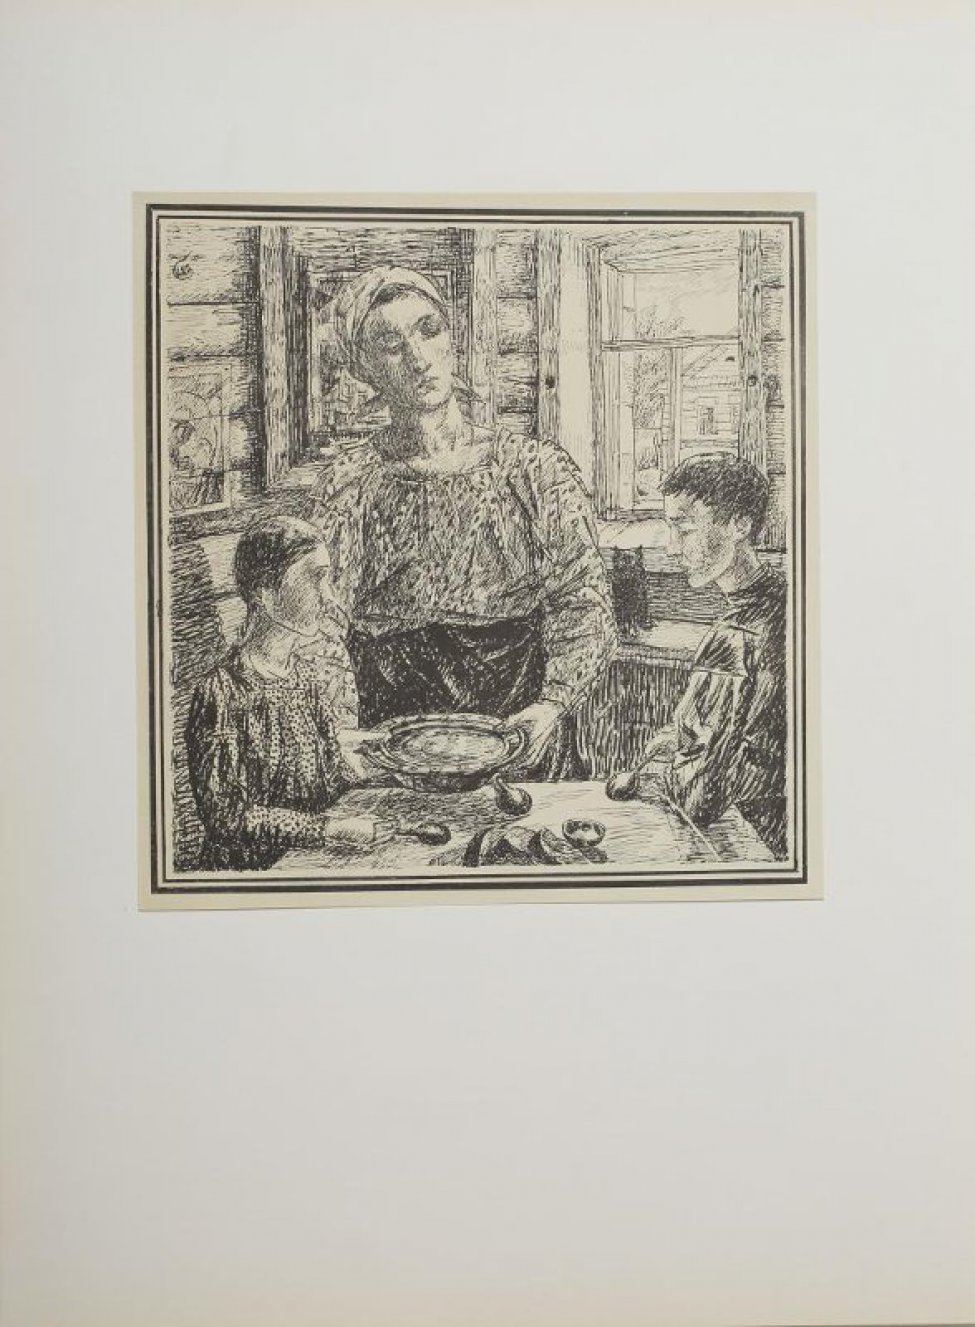 Интерьер бревенчатой избы с иконой на стене слева и окном справа. Около стола стоит молодая женщина в косынке, в кофте и темной юбке с миской в руках. За столом сидят двое подростков: девочка и мальчик. На скамейка около окна сидит кошка .